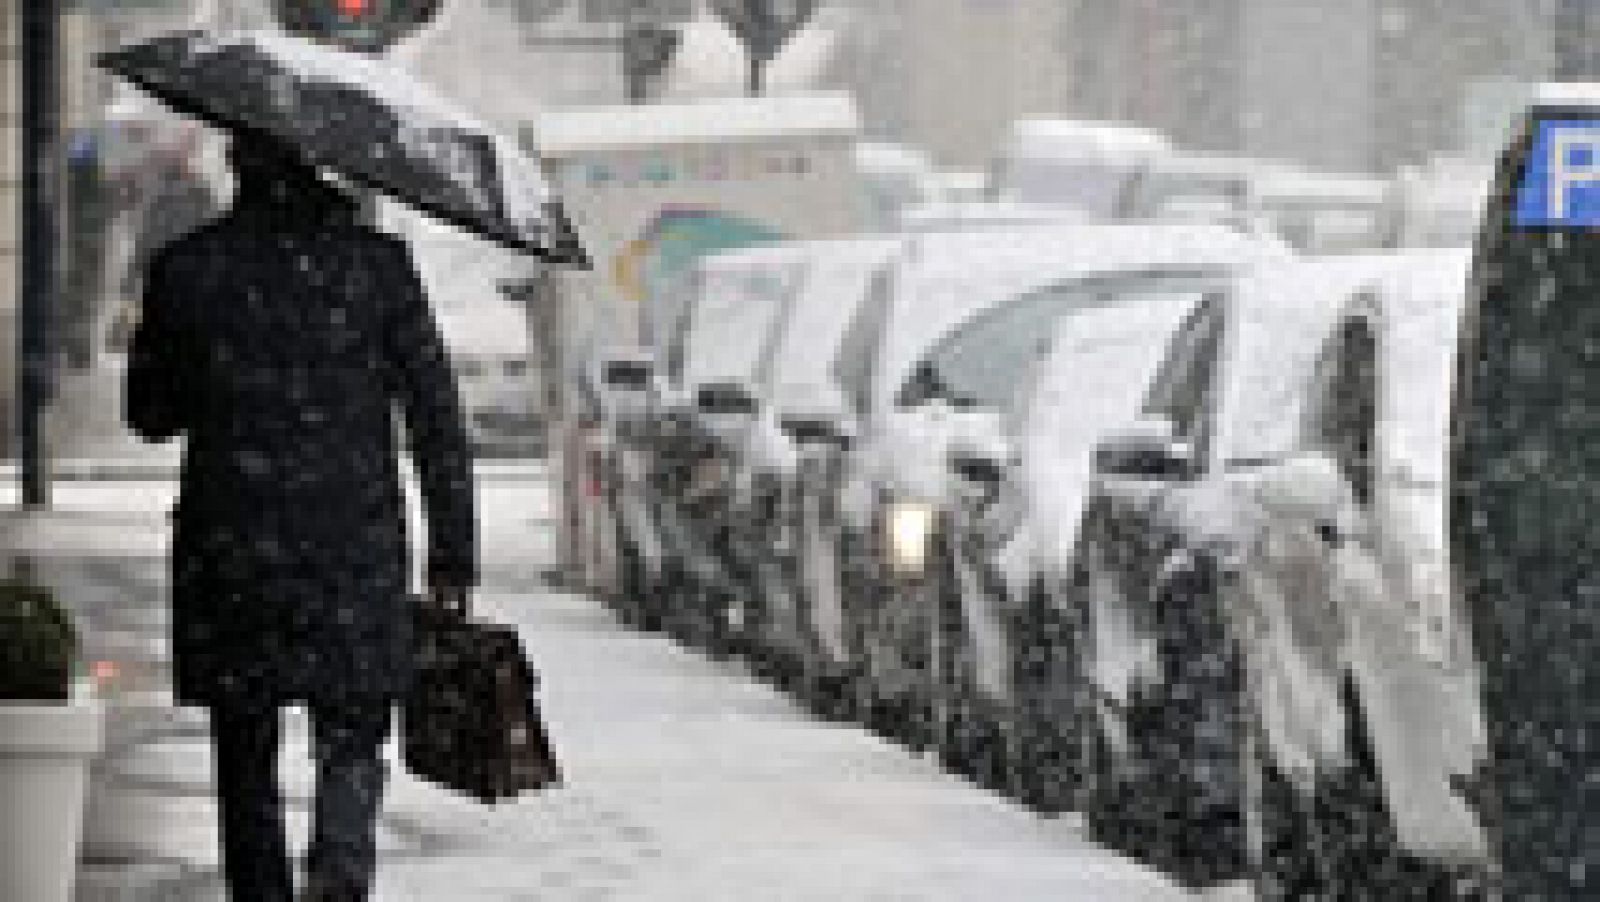 18 provincias se encuentran en alerta por lluvia, viento o nieve